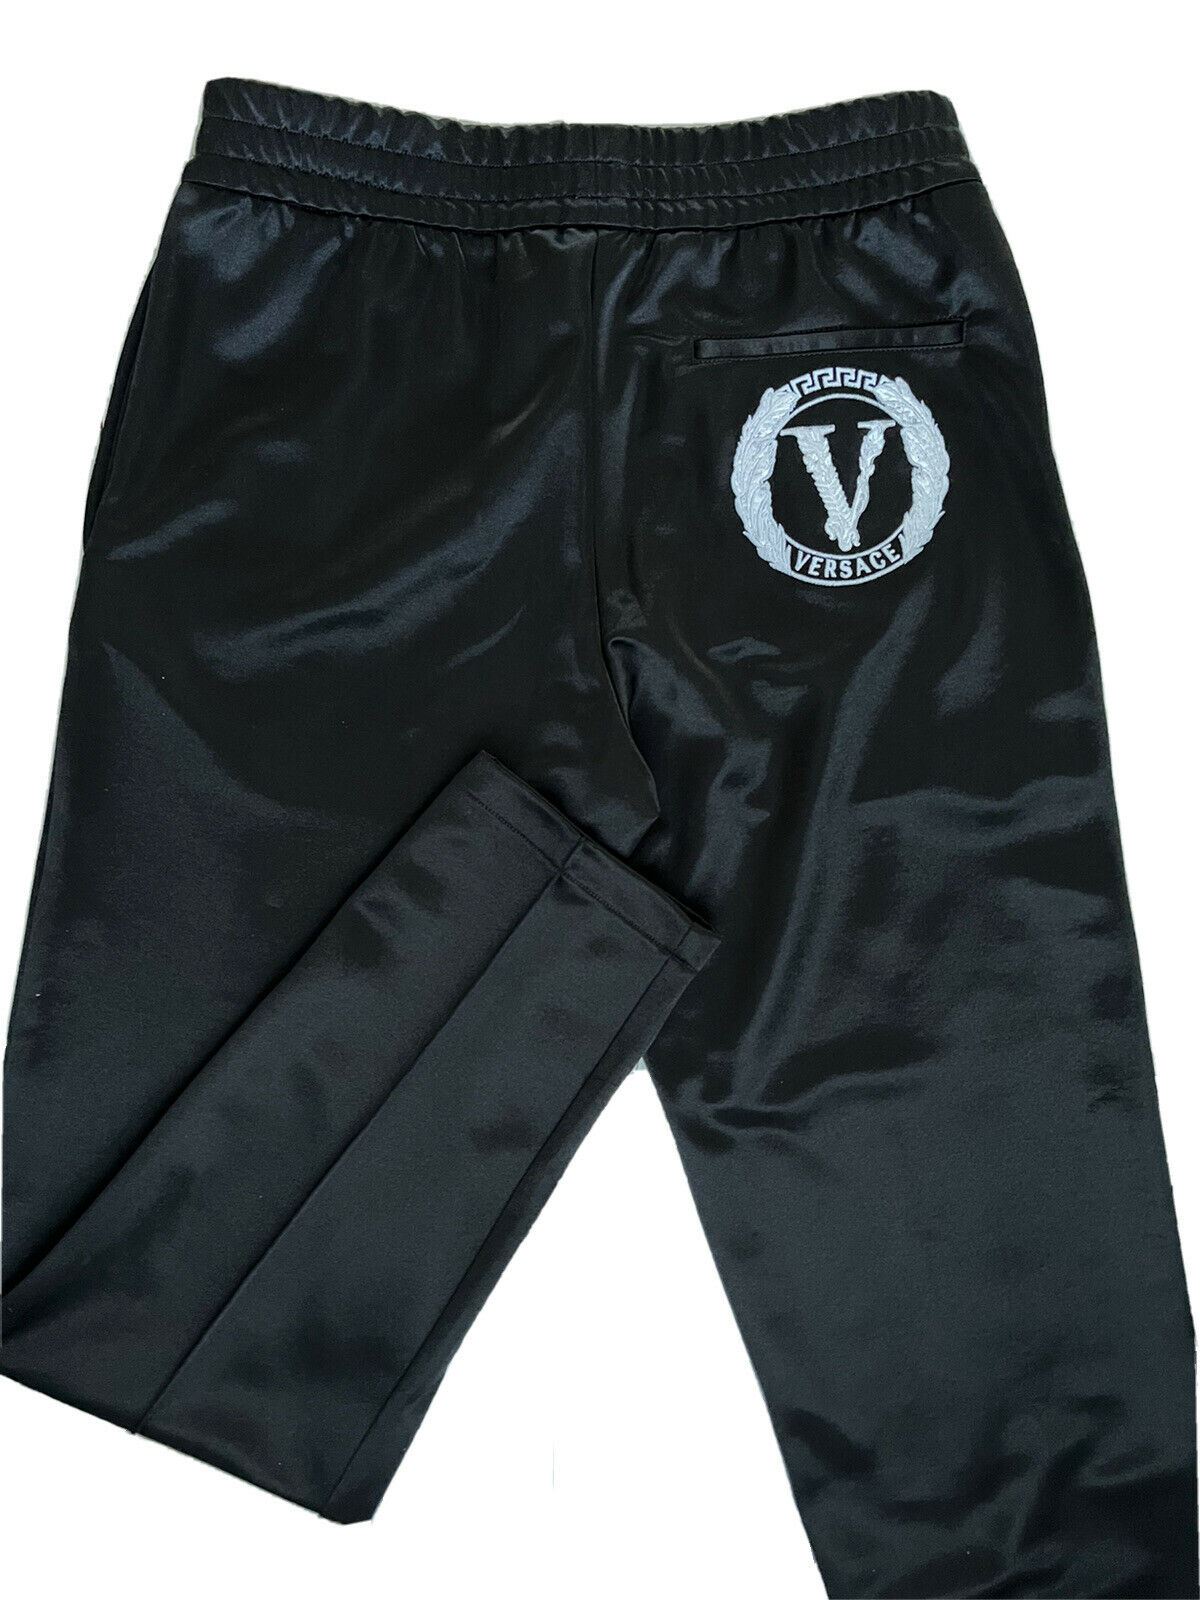 NWT $875 Versace Мужские черные брюки для спортивной одежды индивидуального кроя M Сделано в Италии A88117